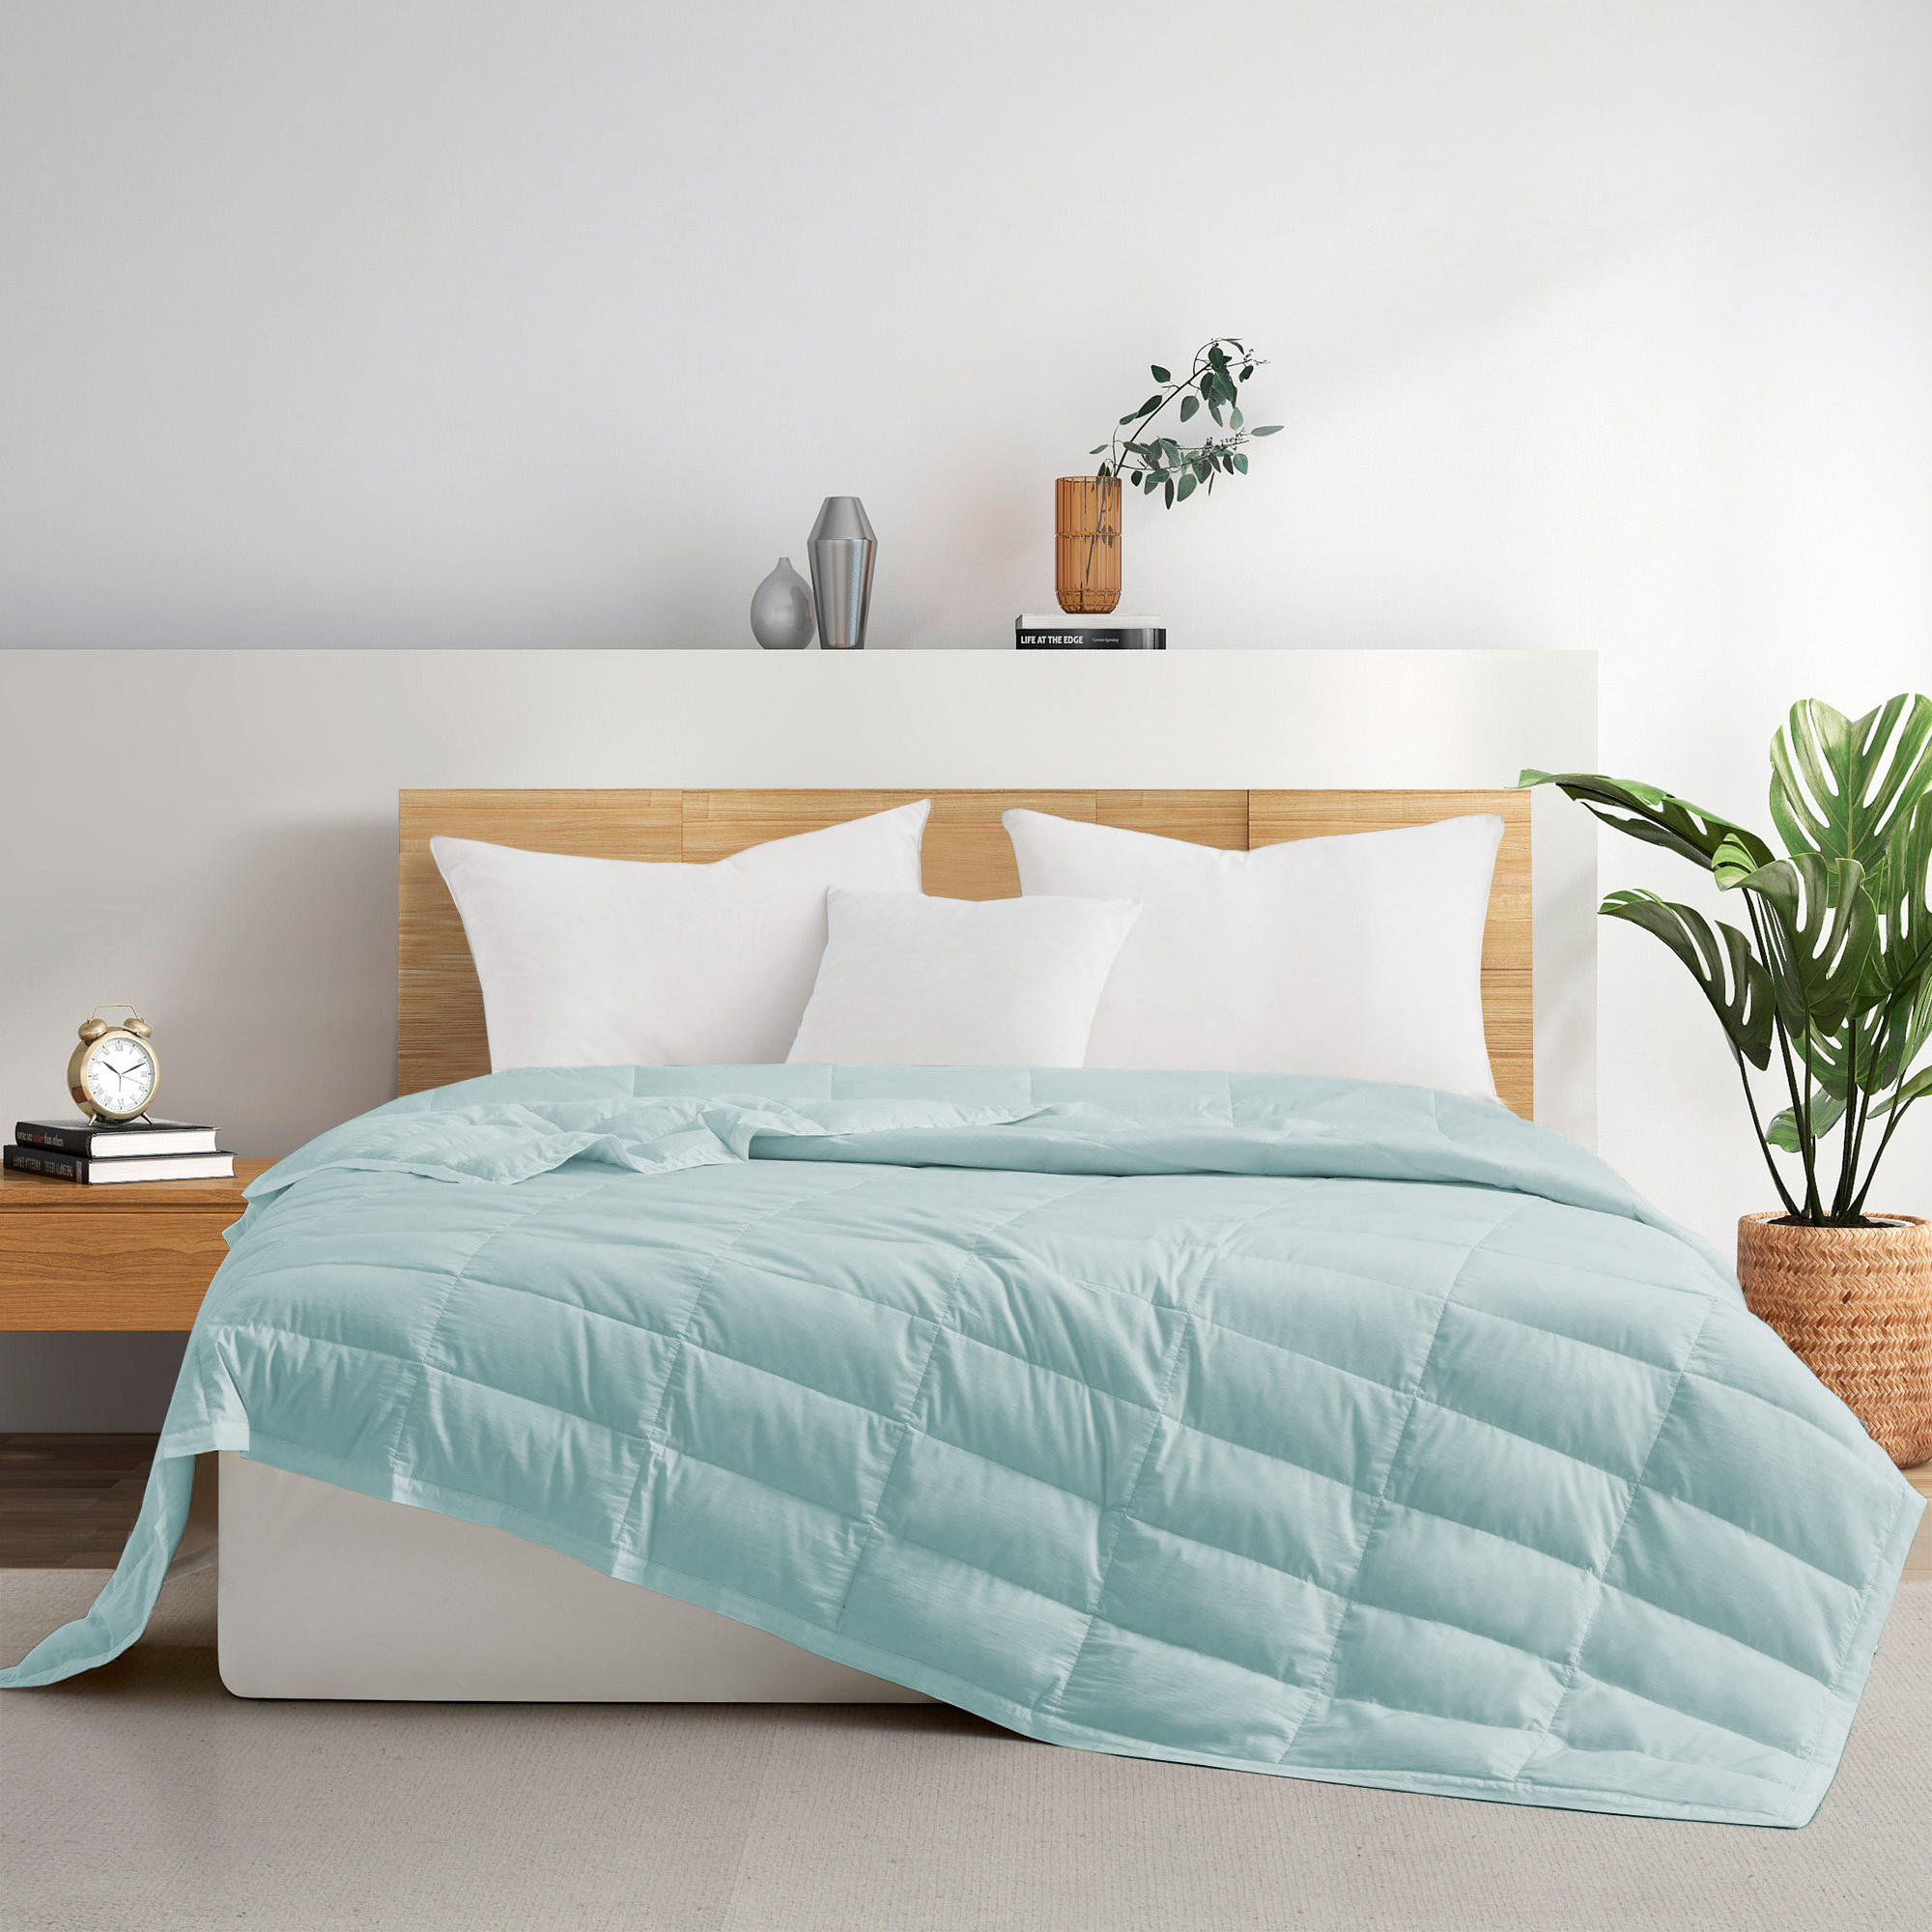 TENCELâ¢ Lyocell Lightweight Cooling Down Blanket-Luxurious Comfort Summer Blanket - Navy Blue, King